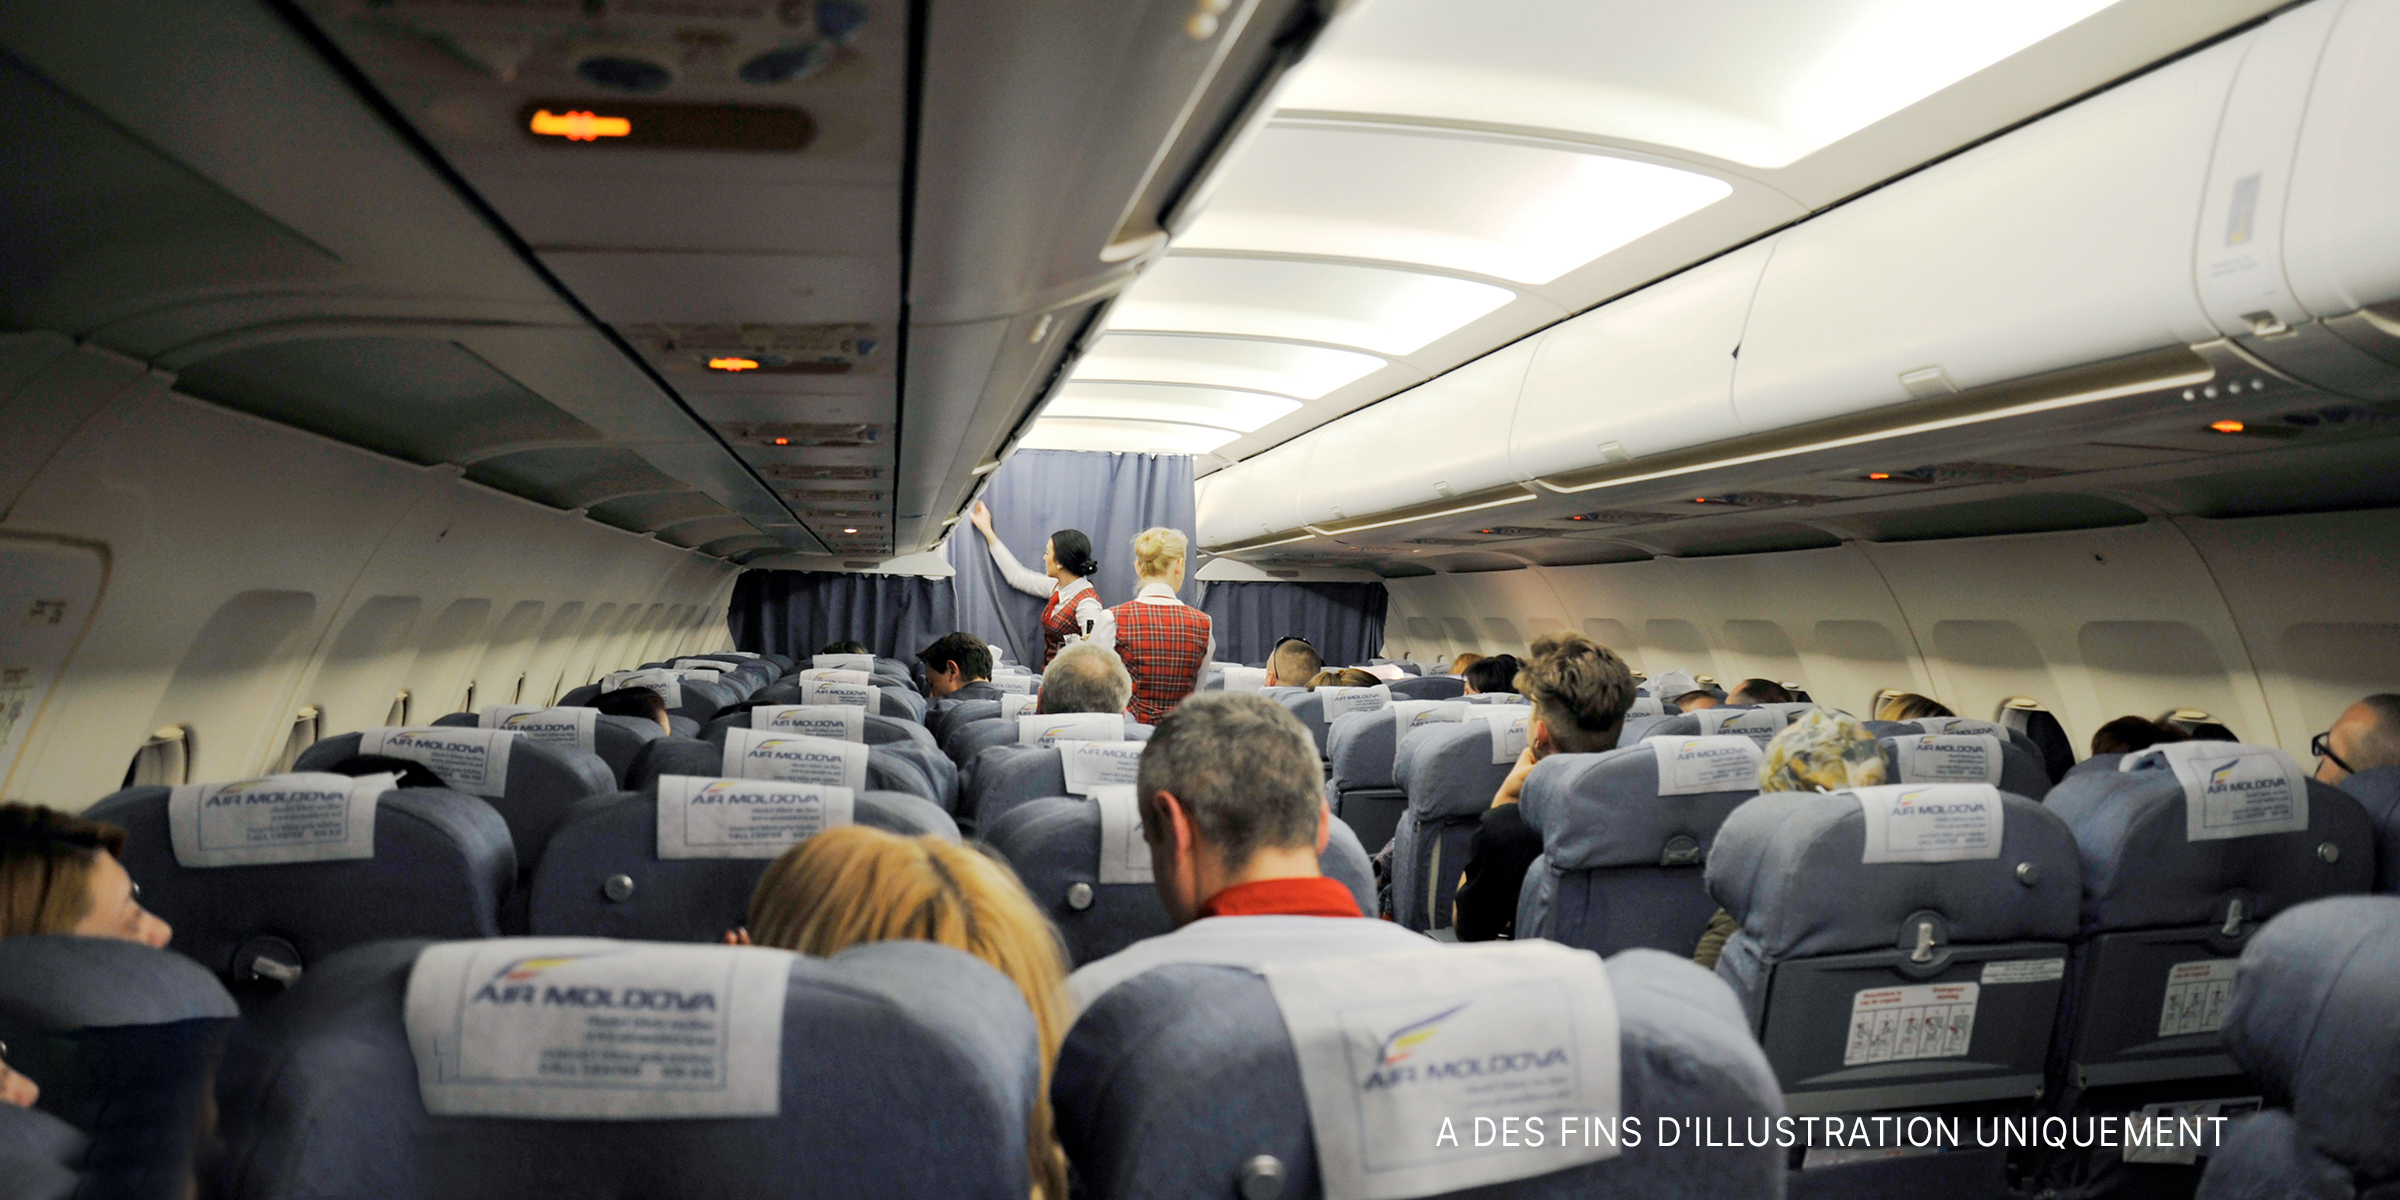 L'intérieur d'un avion avec des passagers assis et des hôtesses de l'air | Photo : Shutterstock